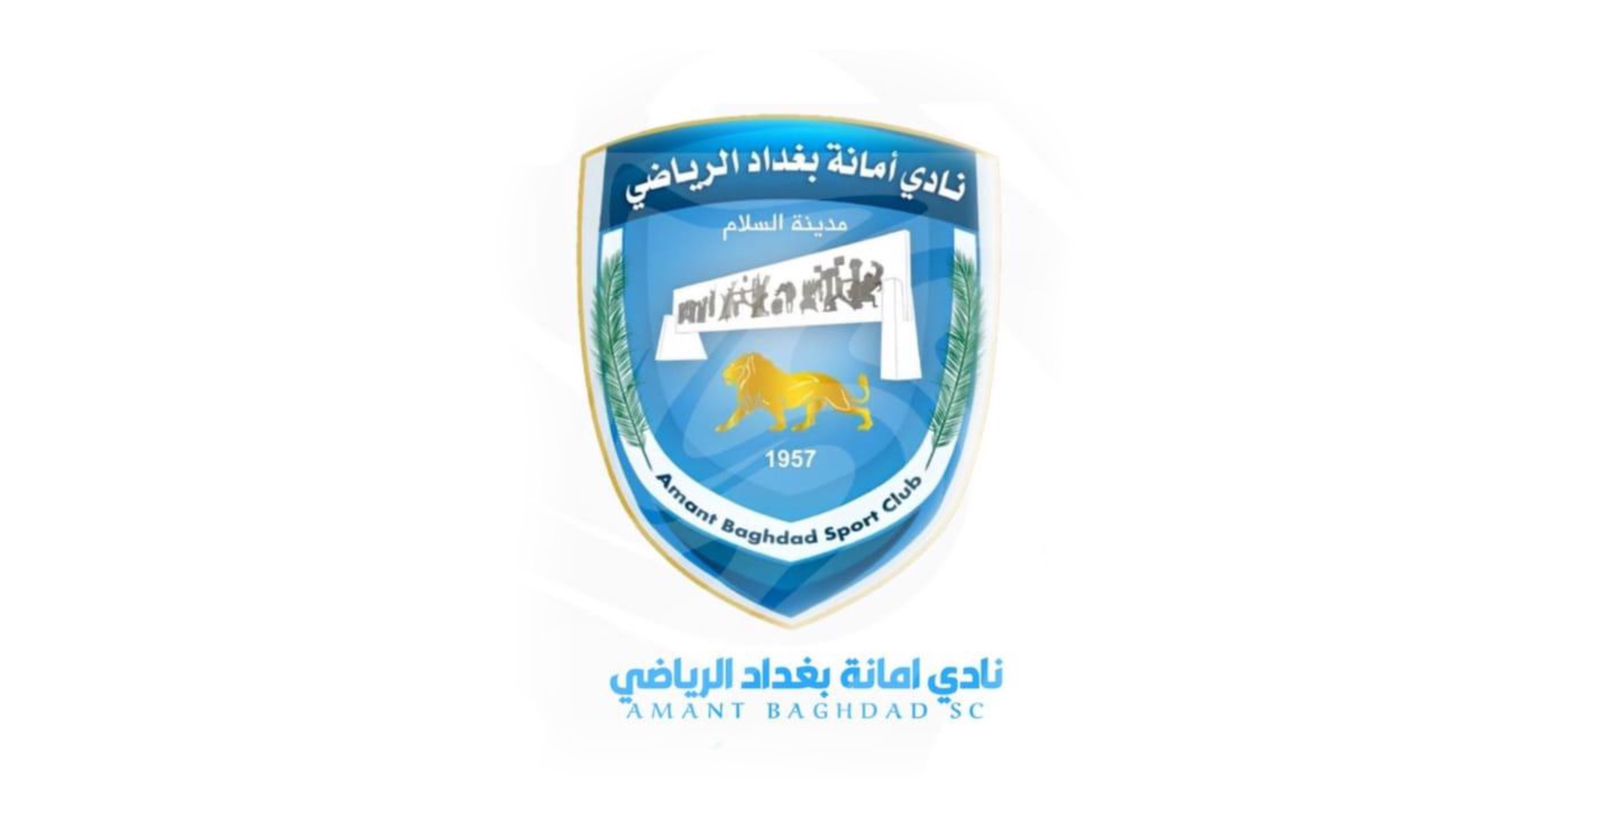 نادي امانة بغداد يفرض غرامات مالية على لاعبيه بسبب "النتائج السيئة"